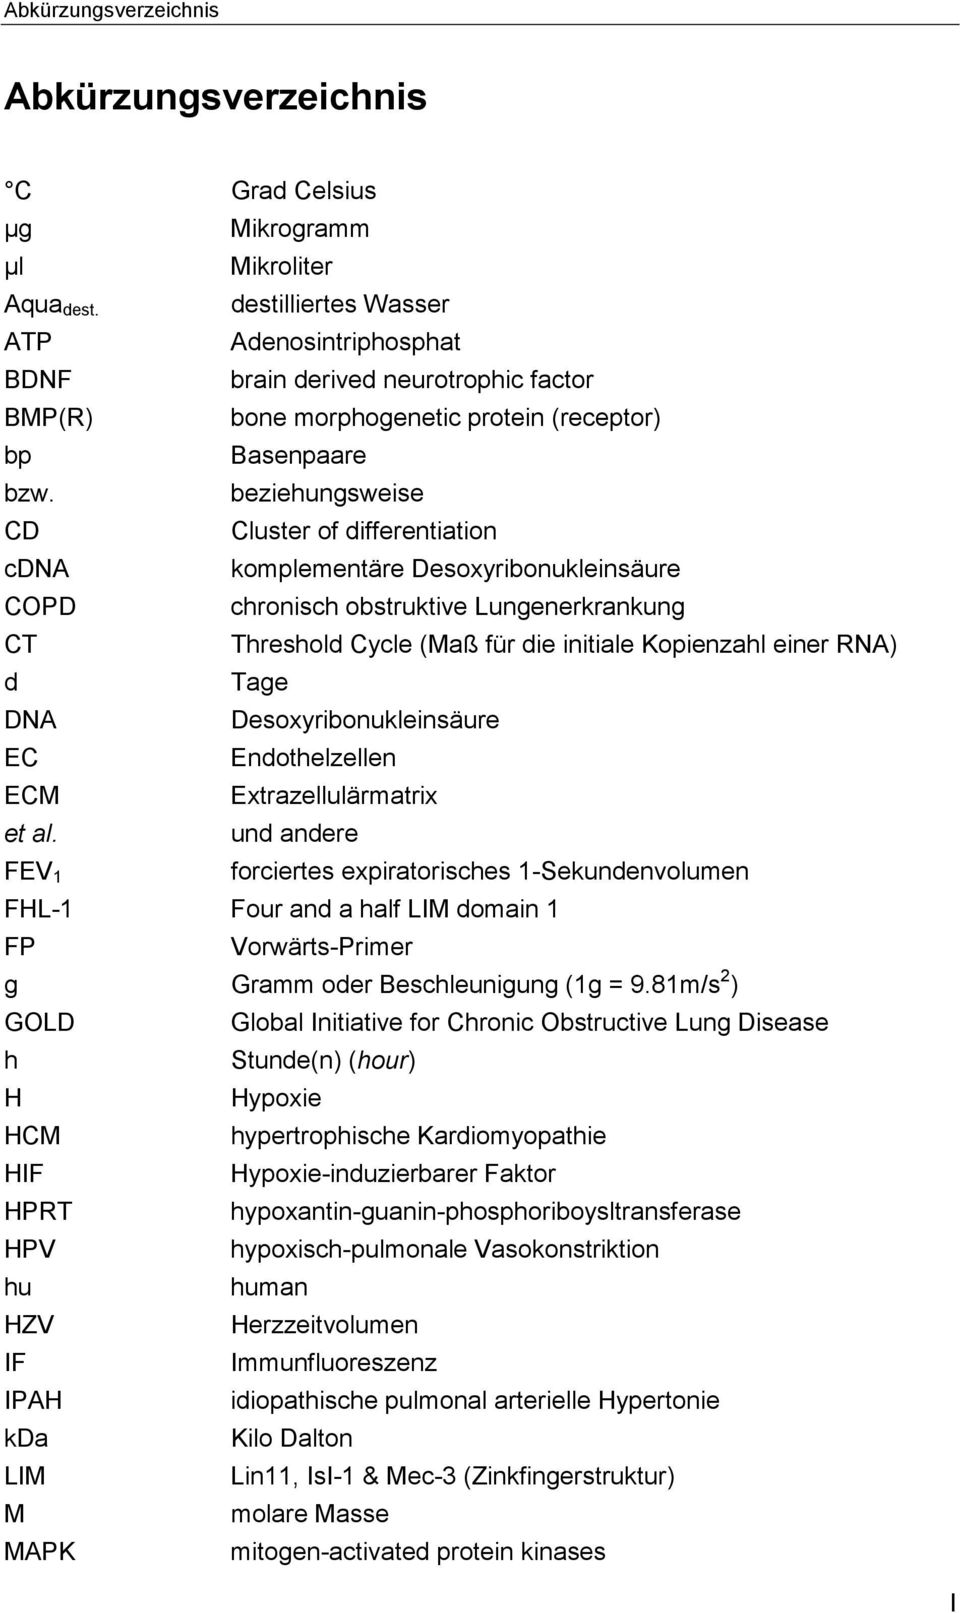 beziehungsweise CD Cluster of differentiation cdna komplementäre Desoxyribonukleinsäure COPD chronisch obstruktive Lungenerkrankung CT Threshold Cycle (Maß für die initiale Kopienzahl einer RNA) d